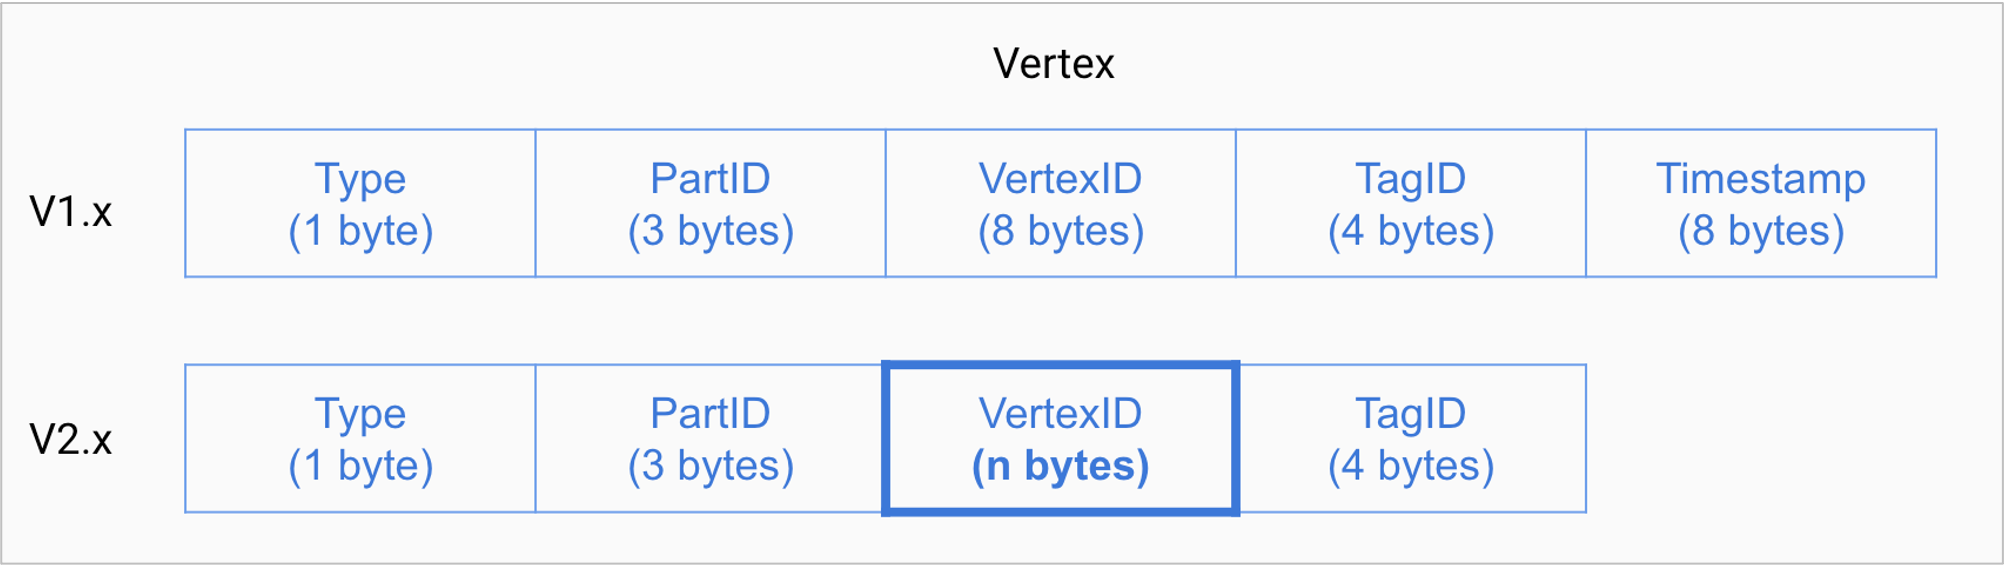 The vertex format of storage service